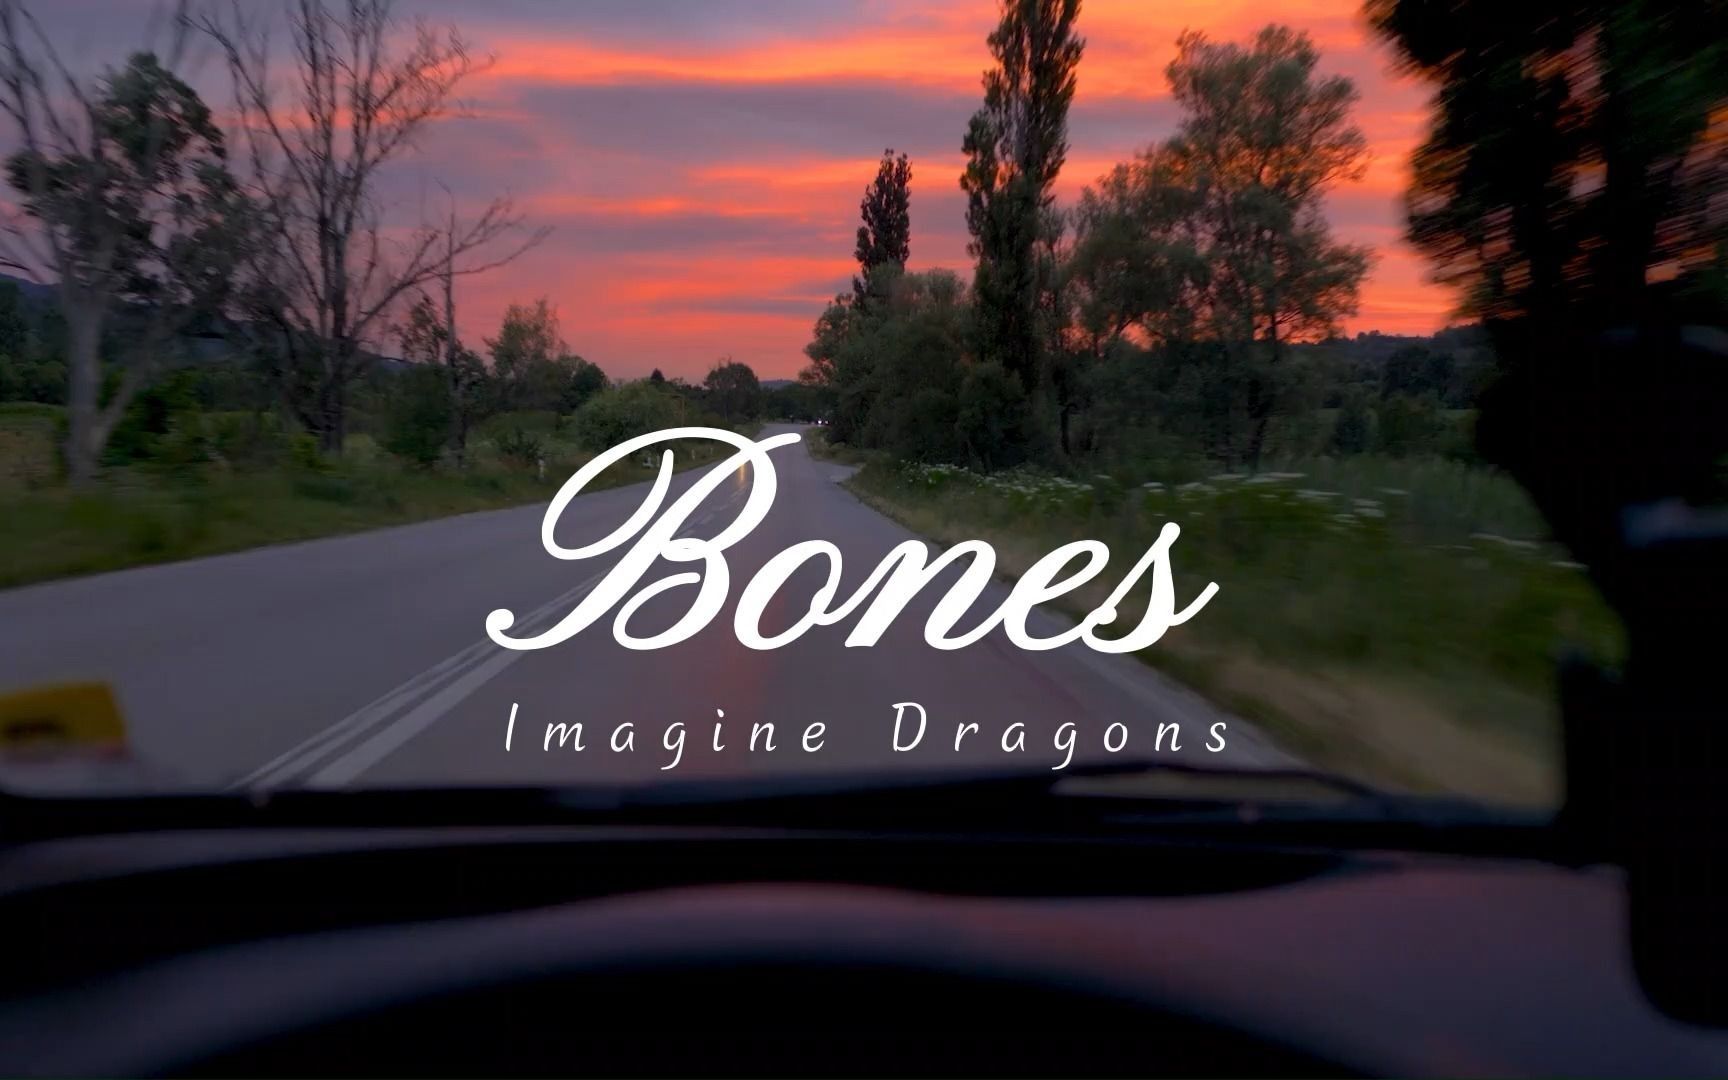 宝藏英文歌曲《Bones》少年的骄傲是刻在骨子里。